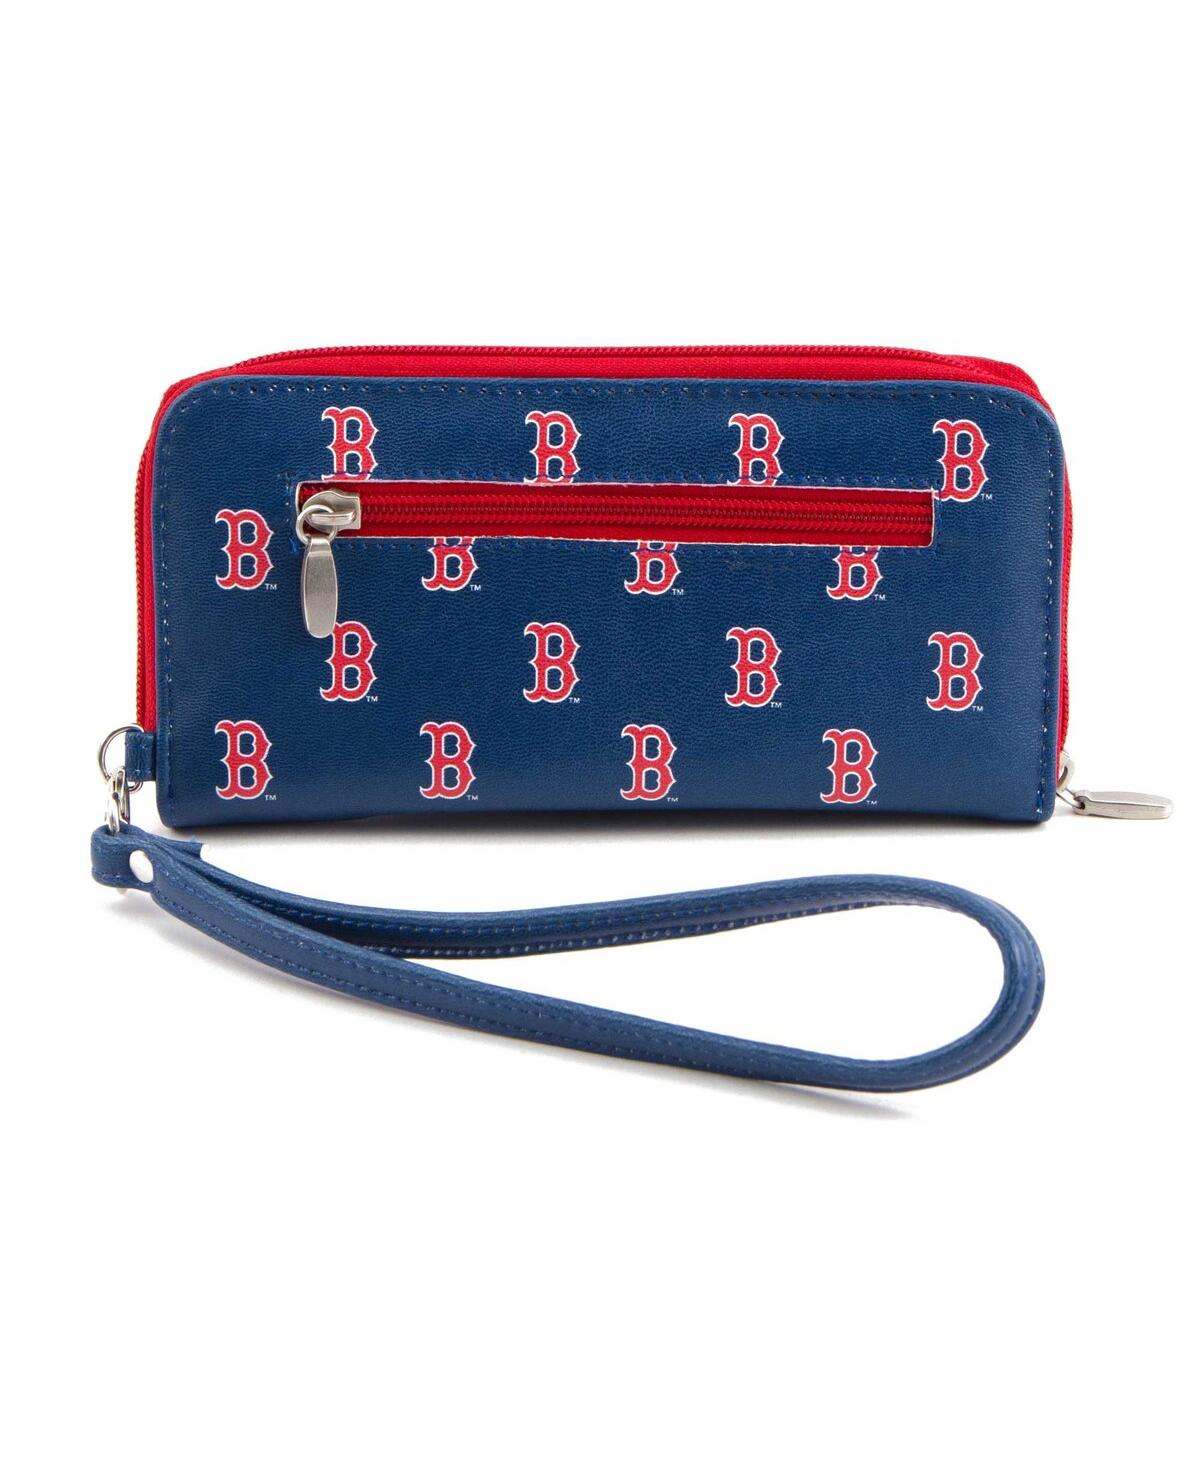 Eagles Wings Women's Boston Red Sox Zip-around Wristlet Wallet In Blue